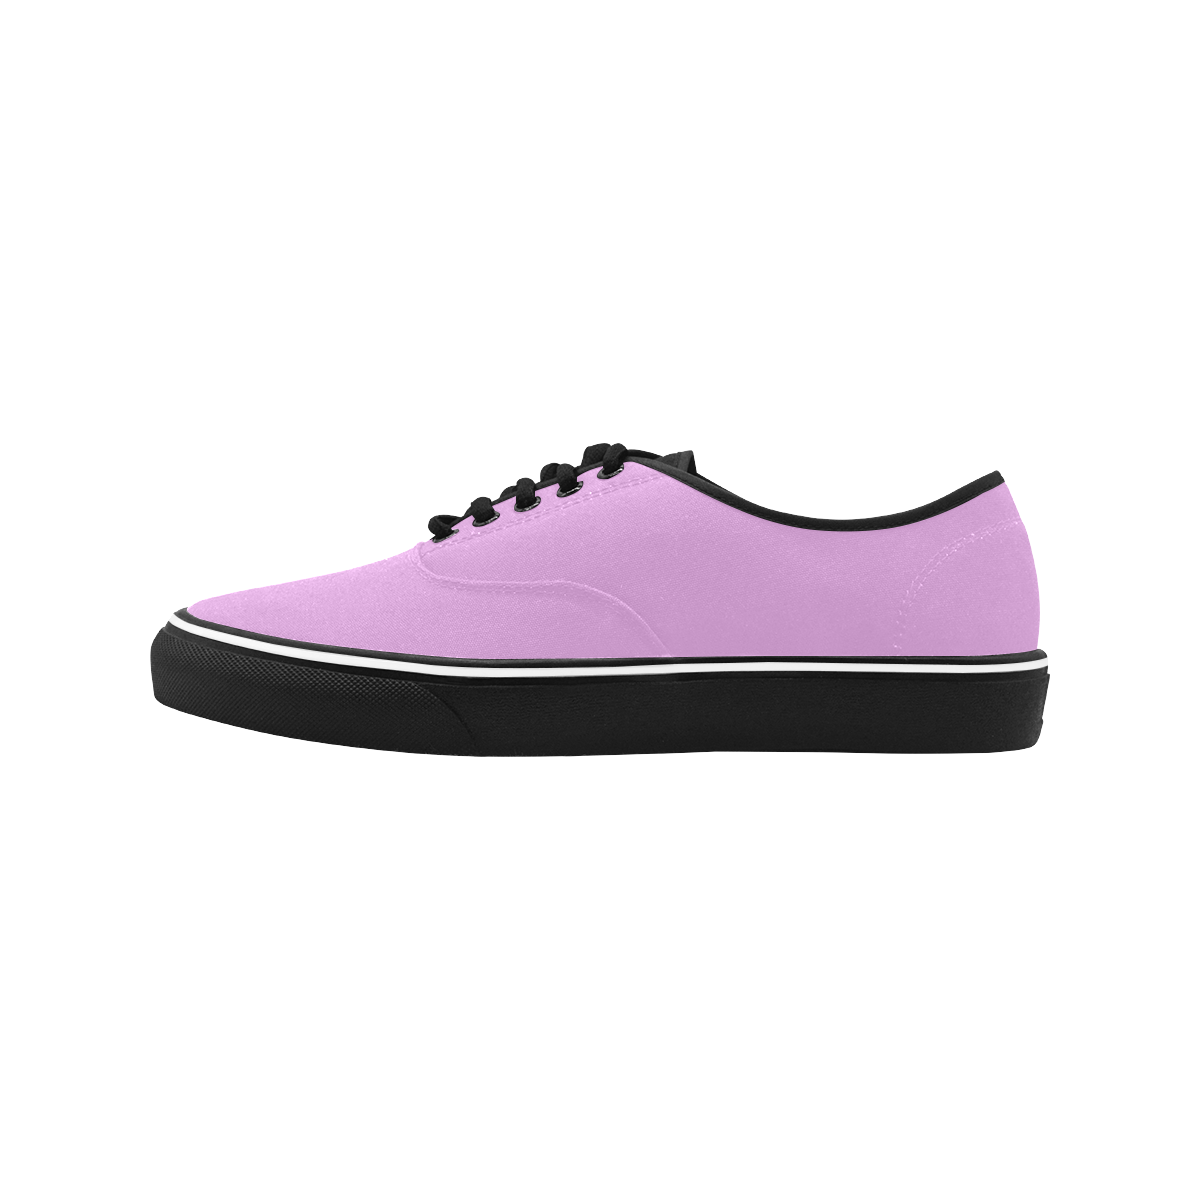 color plum Classic Men's Canvas Low Top Shoes (Model E001-4)